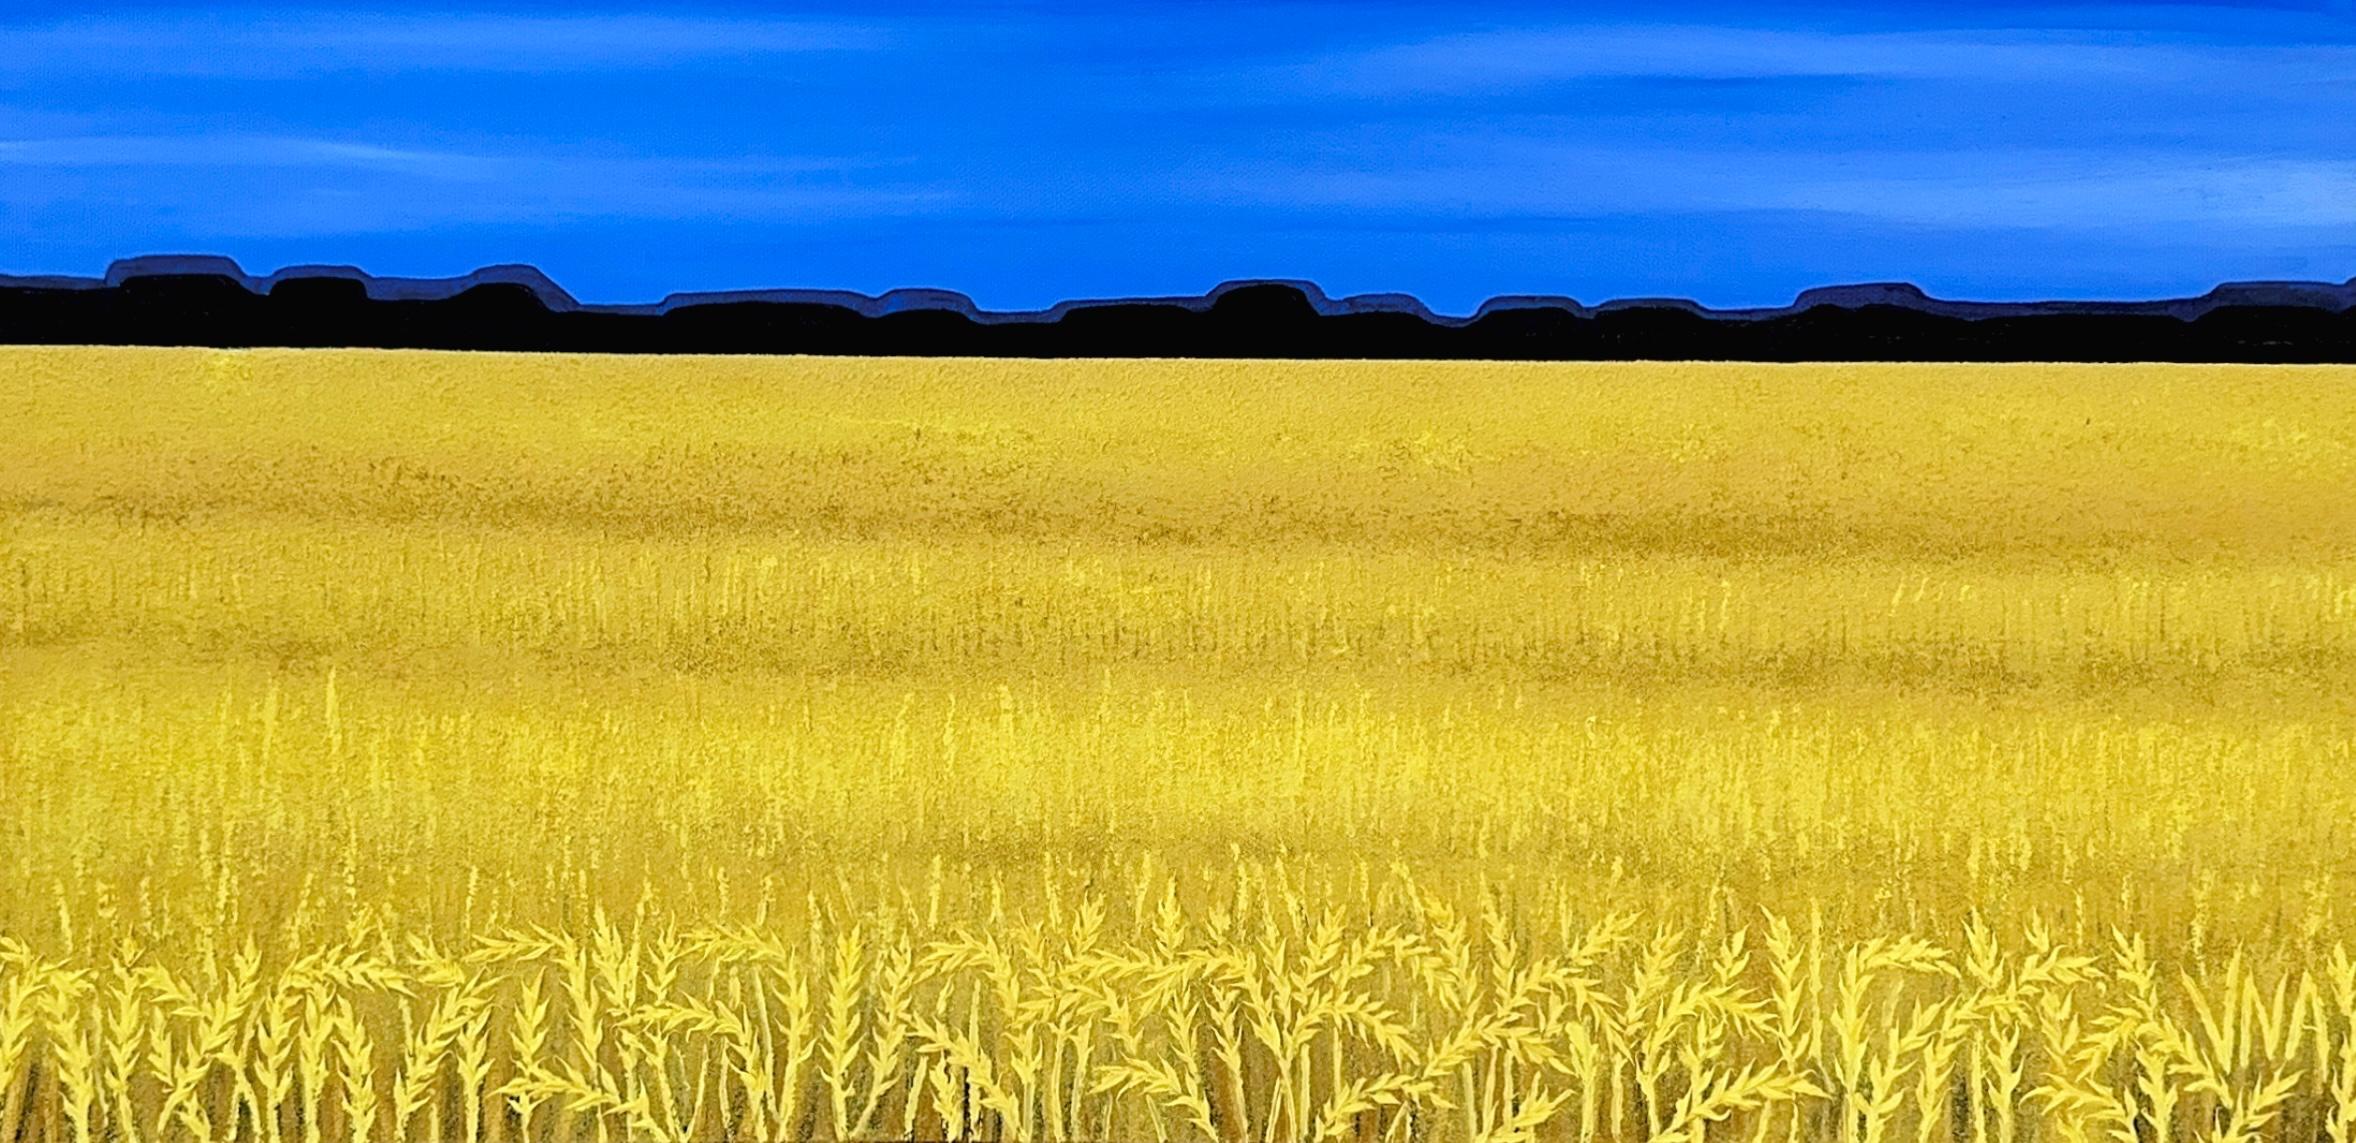 Goldenes Weizenfeld, Ukraine, von Vokiana – Painting von Unknown